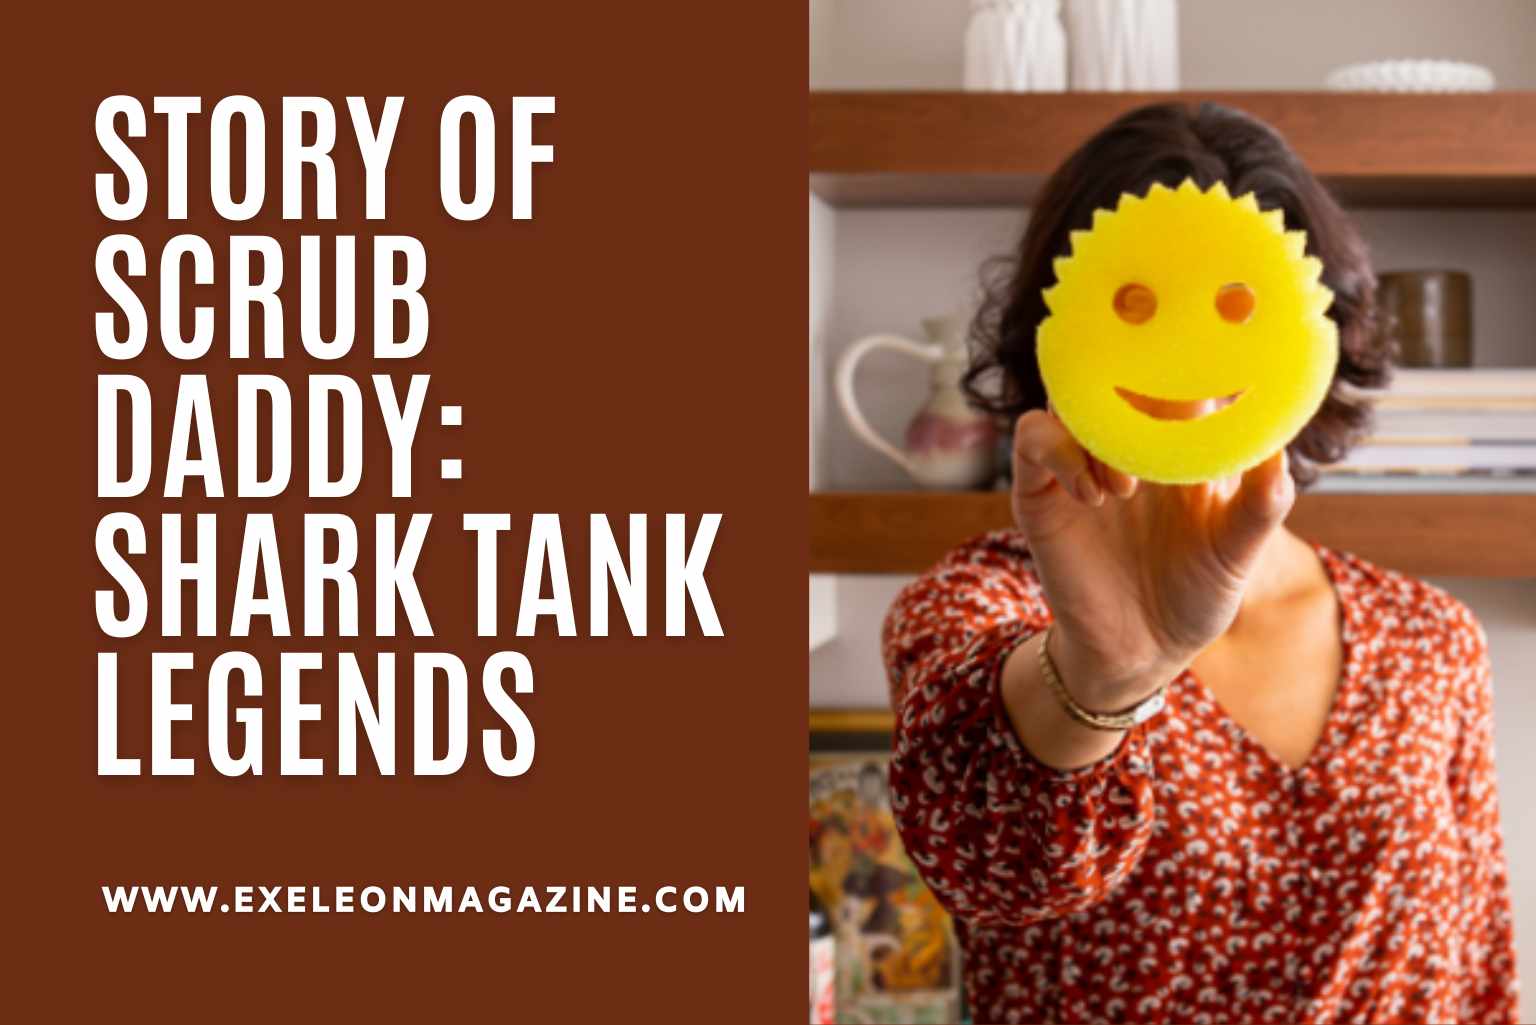 https://exeleonmagazine.com/wp-content/uploads/2023/02/Story-of-Scrub-Daddy-Shark-Tank-Legends.jpg